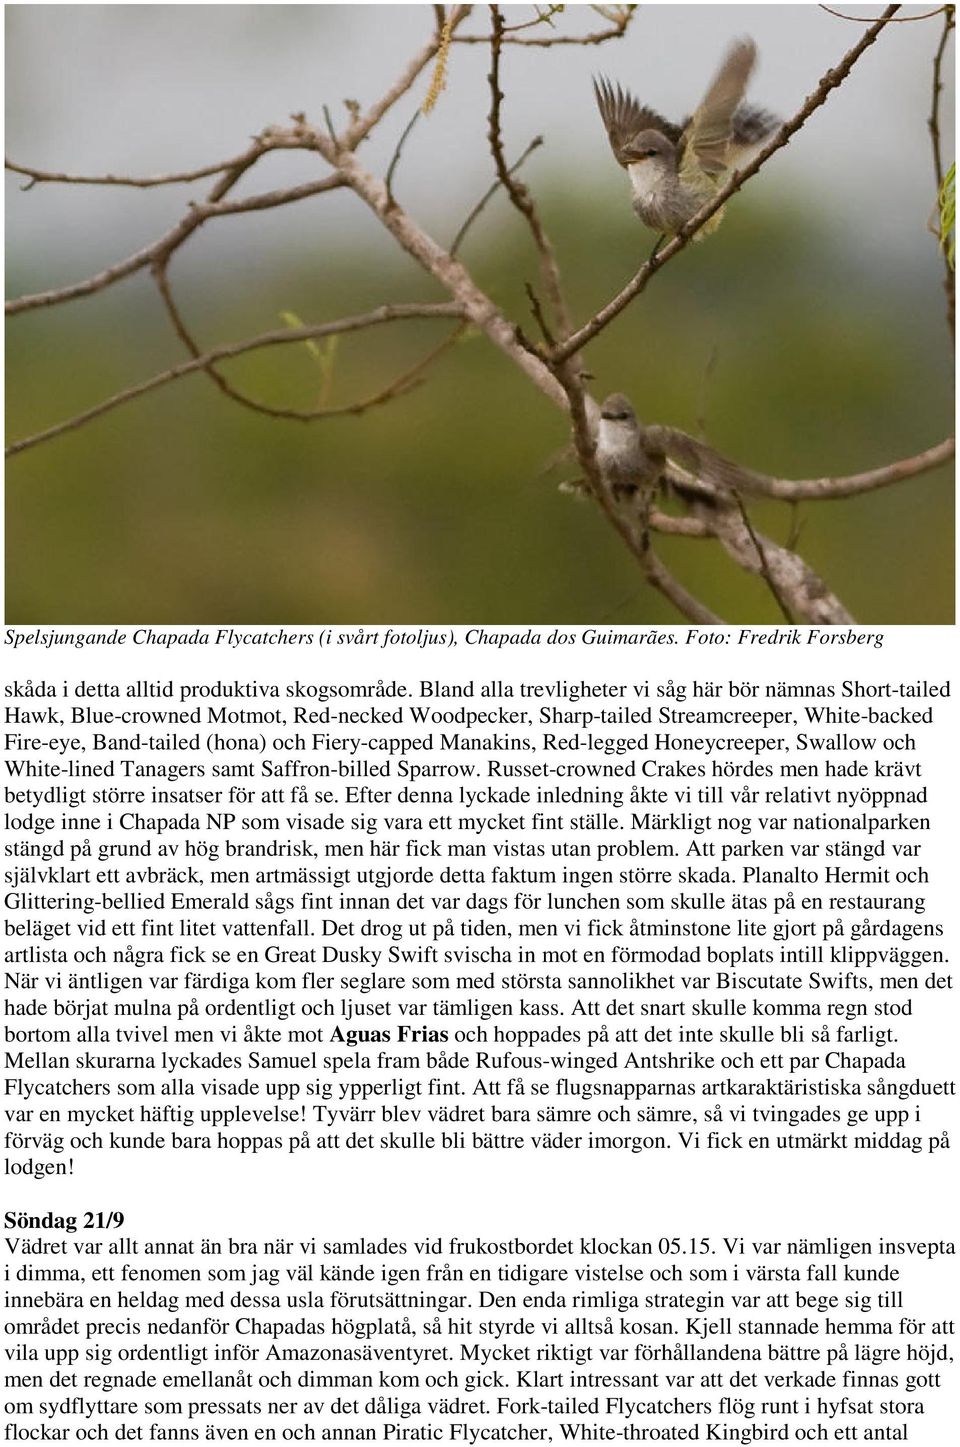 Manakins, Red-legged Honeycreeper, Swallow och White-lined Tanagers samt Saffron-billed Sparrow. Russet-crowned Crakes hördes men hade krävt betydligt större insatser för att få se.